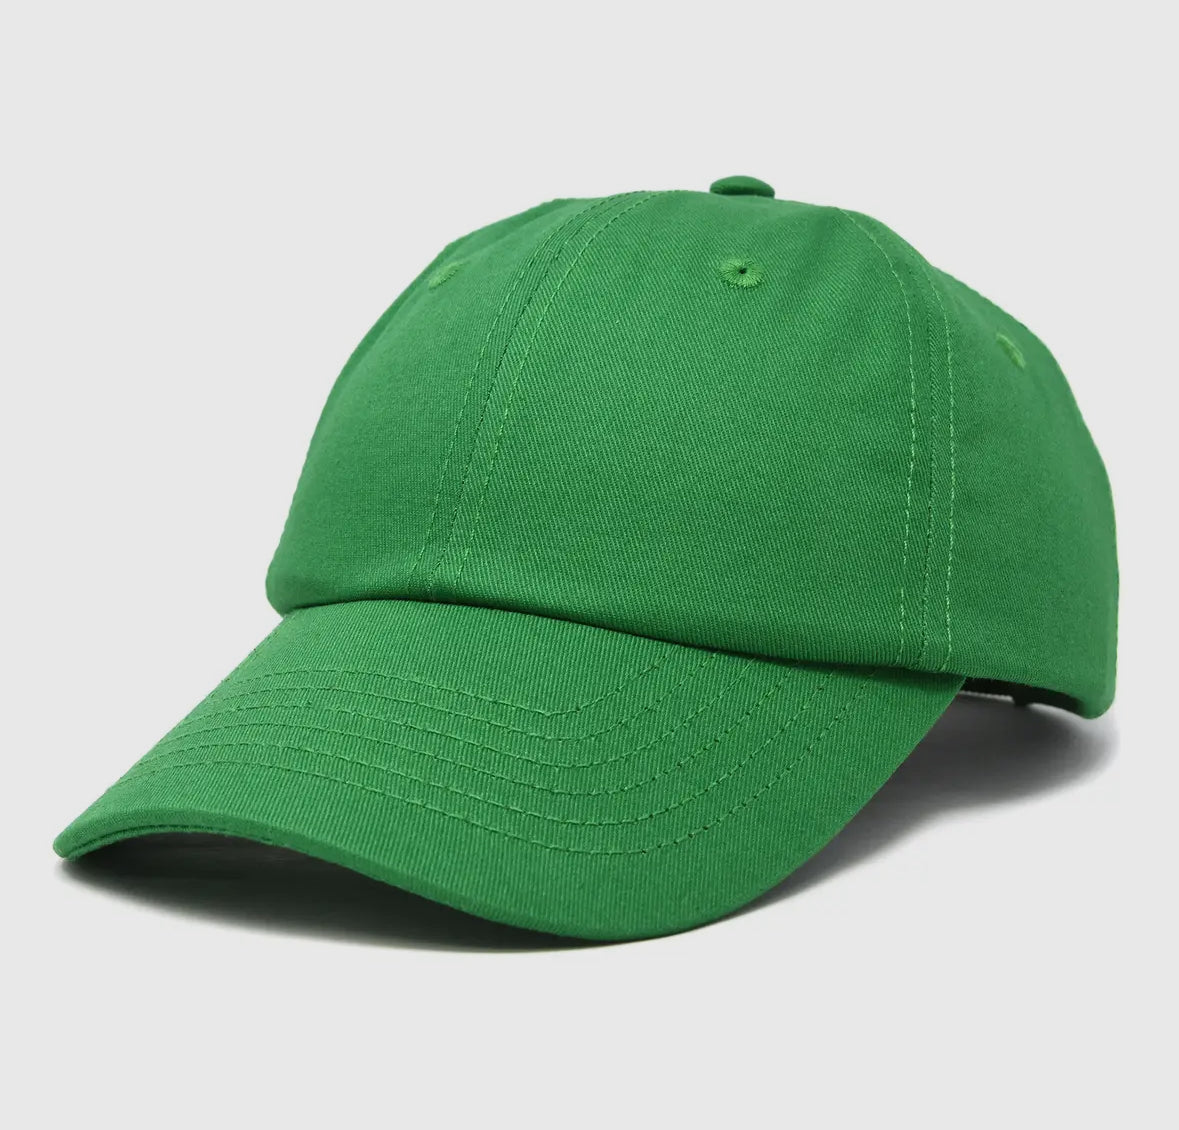 Unisex Youth Childrens Cotton Cap Adjustable Plain Hat